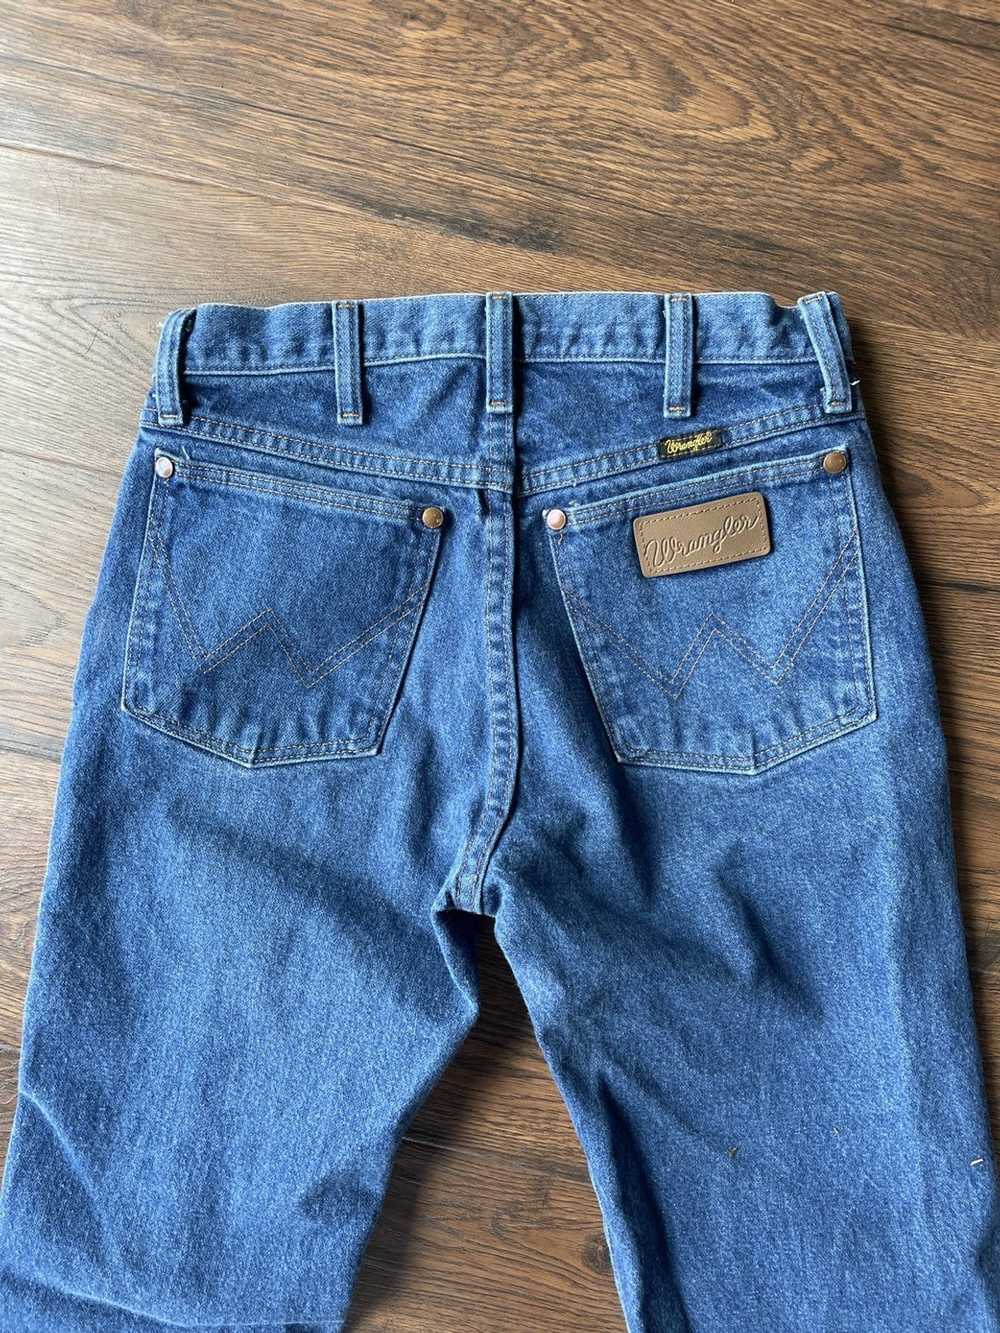 Wrangler wrangler jeans - image 5